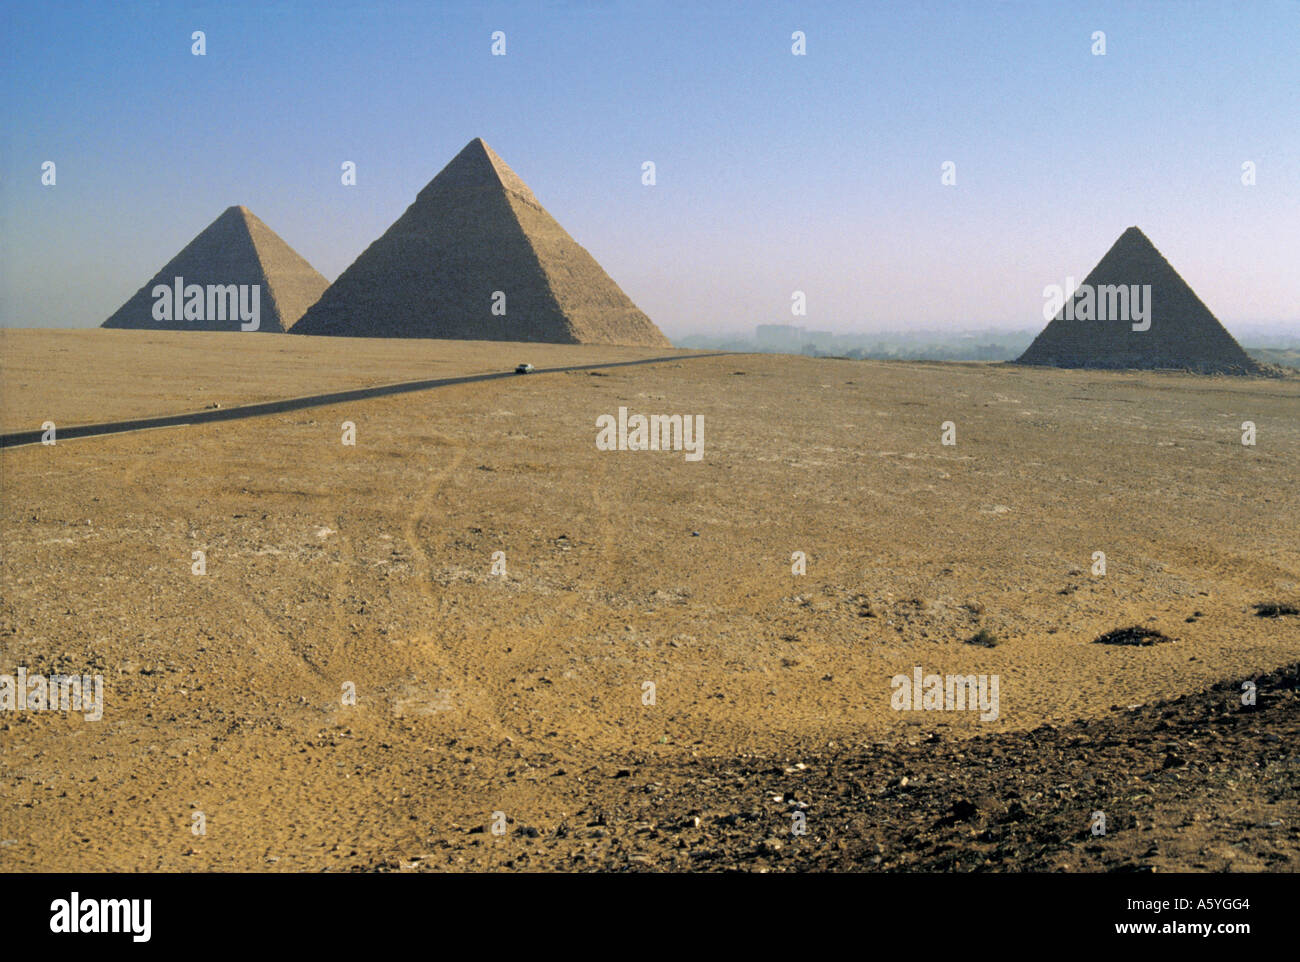 Pyramides sur le paysage, pyramide de Ripperblackstaff, Le Caire, Egypte Banque D'Images